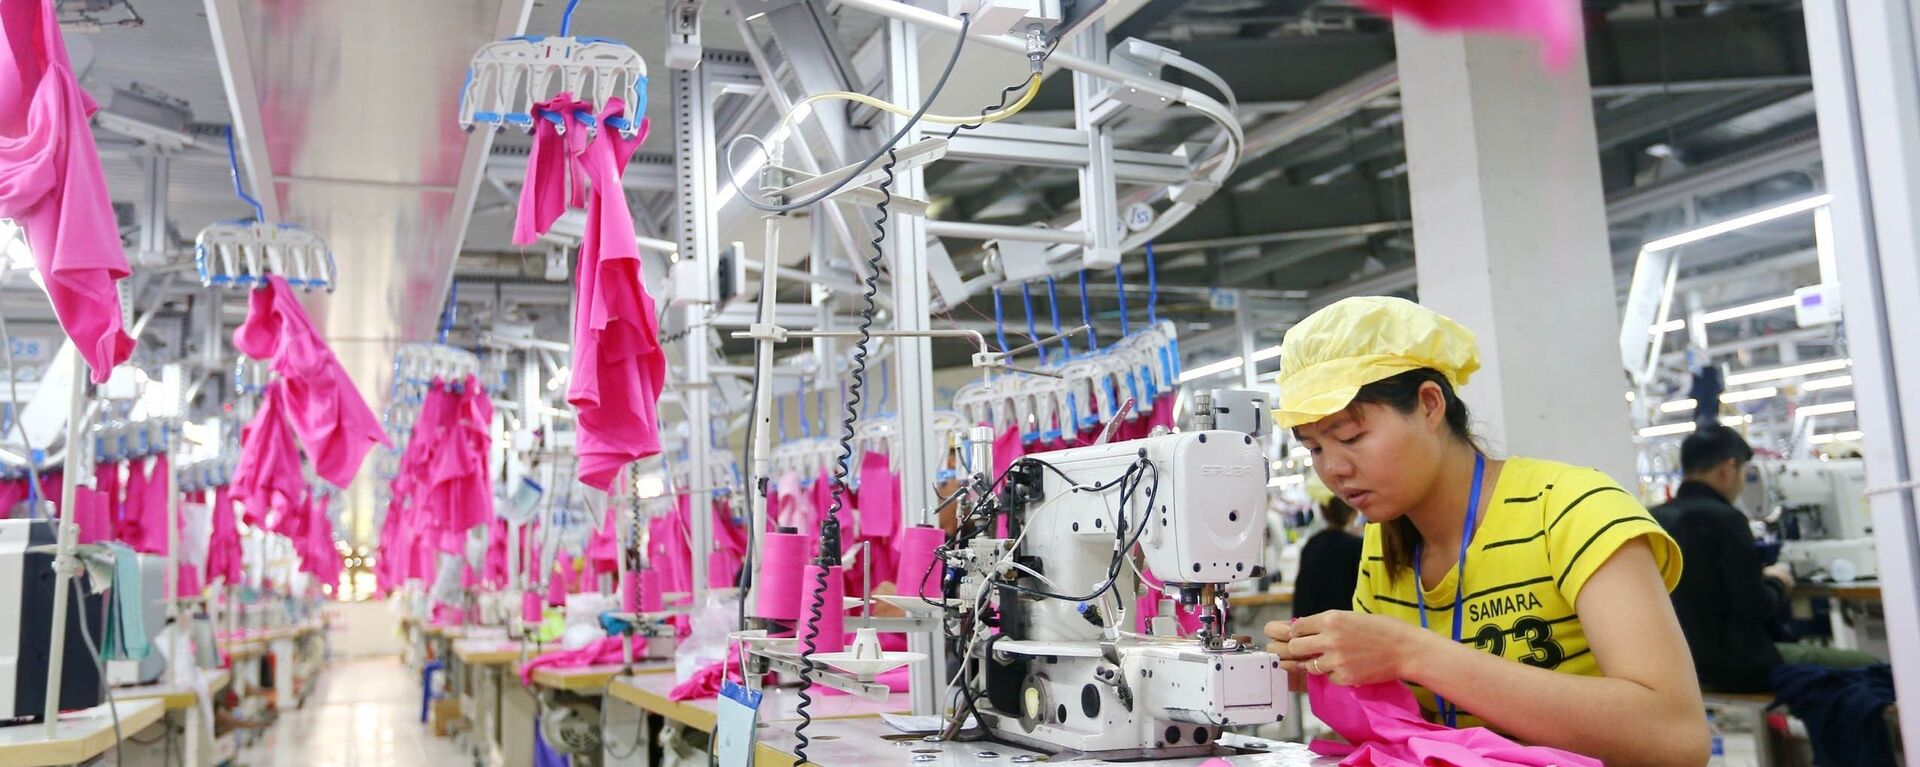 Sản xuất hàng may mặc xuất khẩu tại Công ty CP Minh Anh – Kim Liên, Khu công nghiệp Bắc Vinh (Nghệ An). - Sputnik Việt Nam, 1920, 26.03.2019